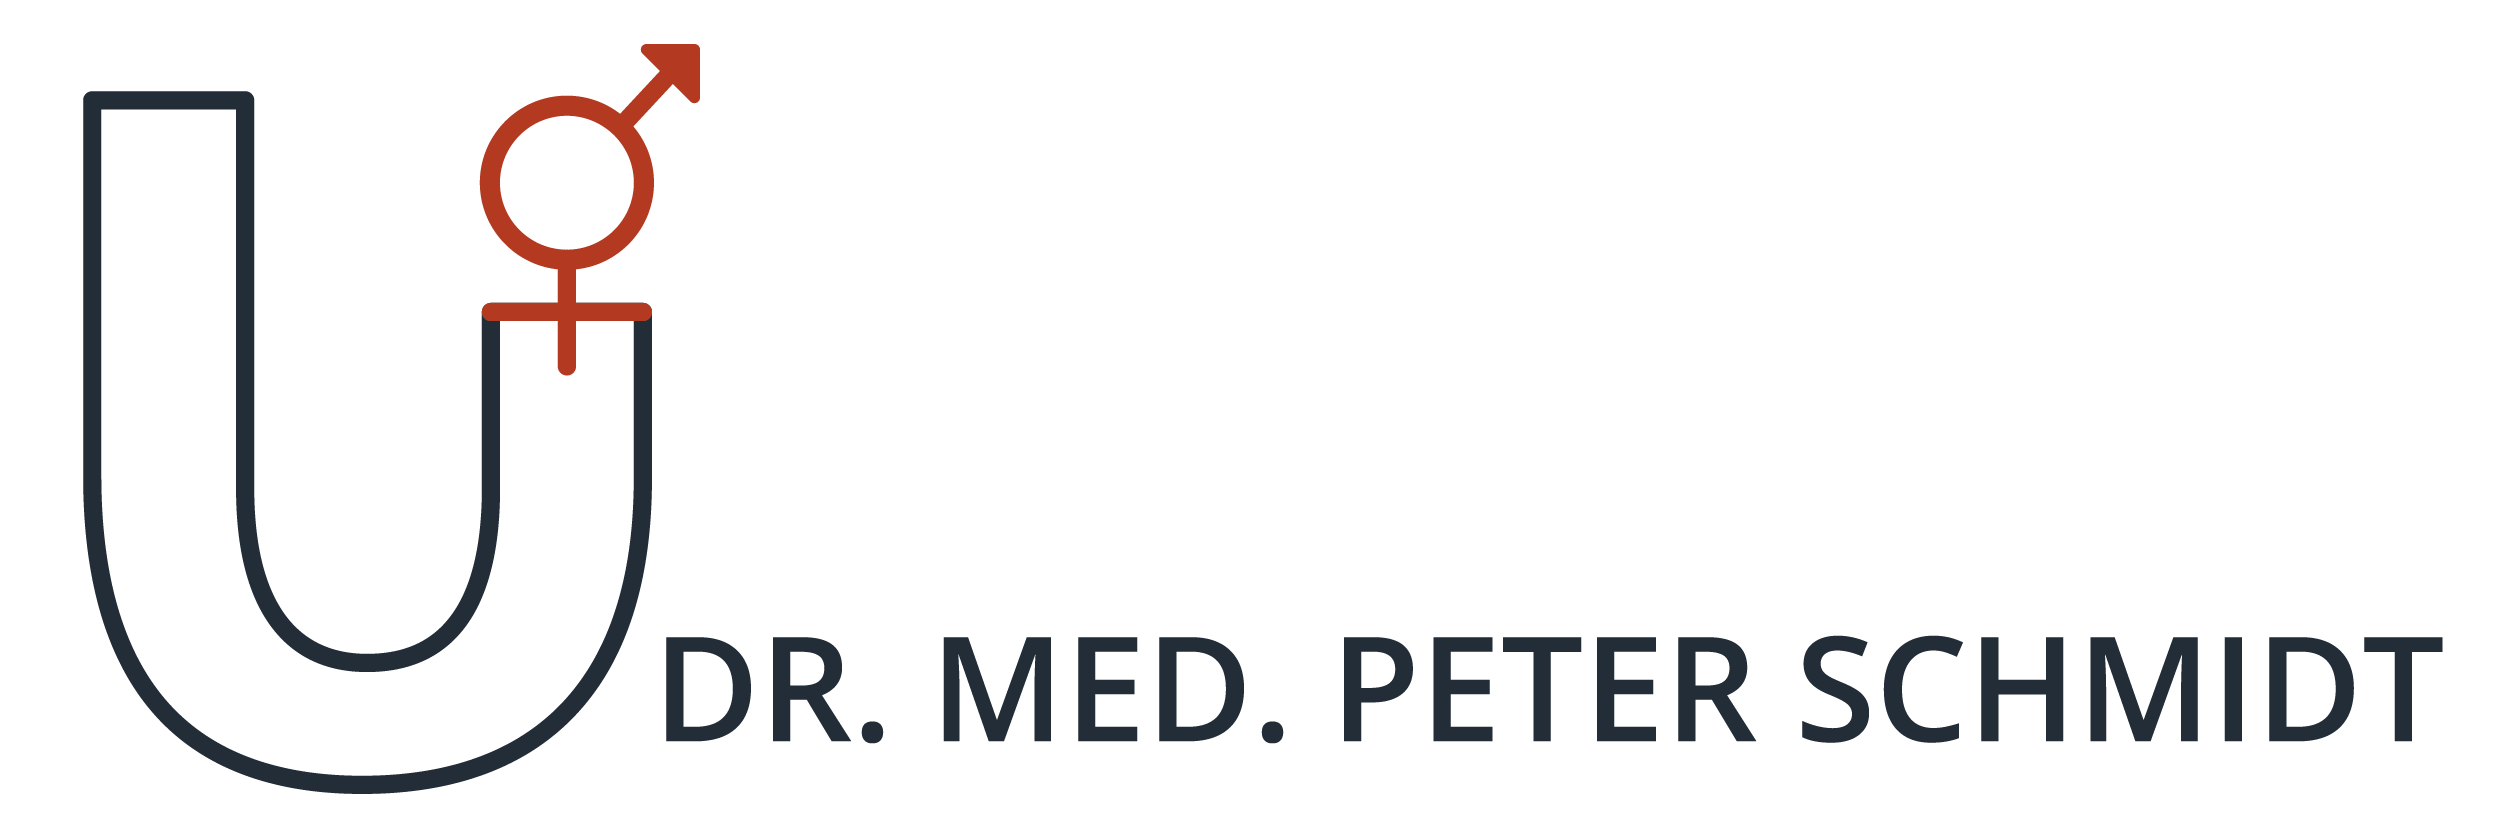 Dr. Peter Schmidt